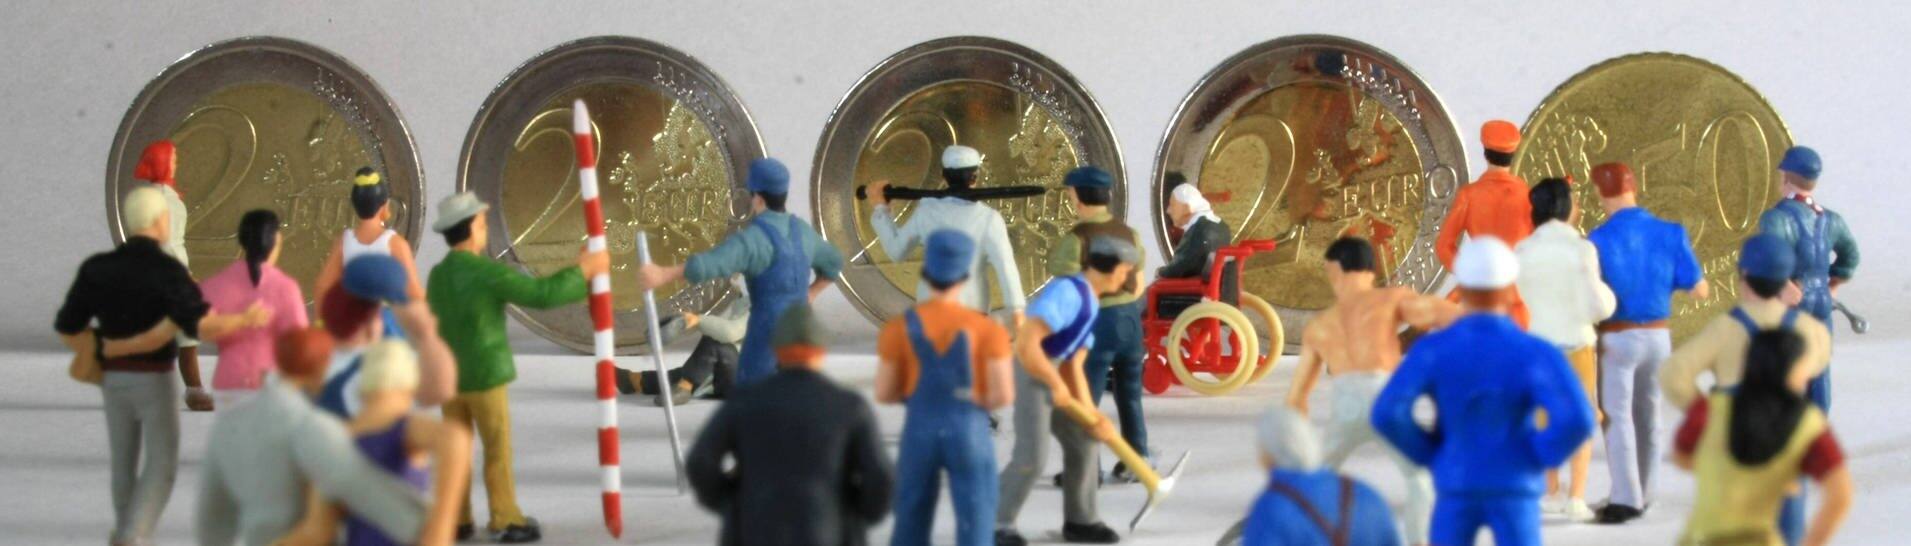 Symbolfoto Mindestlohn:Miniatur Figuren in Arbeitskleidung unterschiedlicher Branchen stehen vor Euro Geldmünzen im Wert von 8,50 (Foto: IMAGO, IMAGO / Ralph Peters)